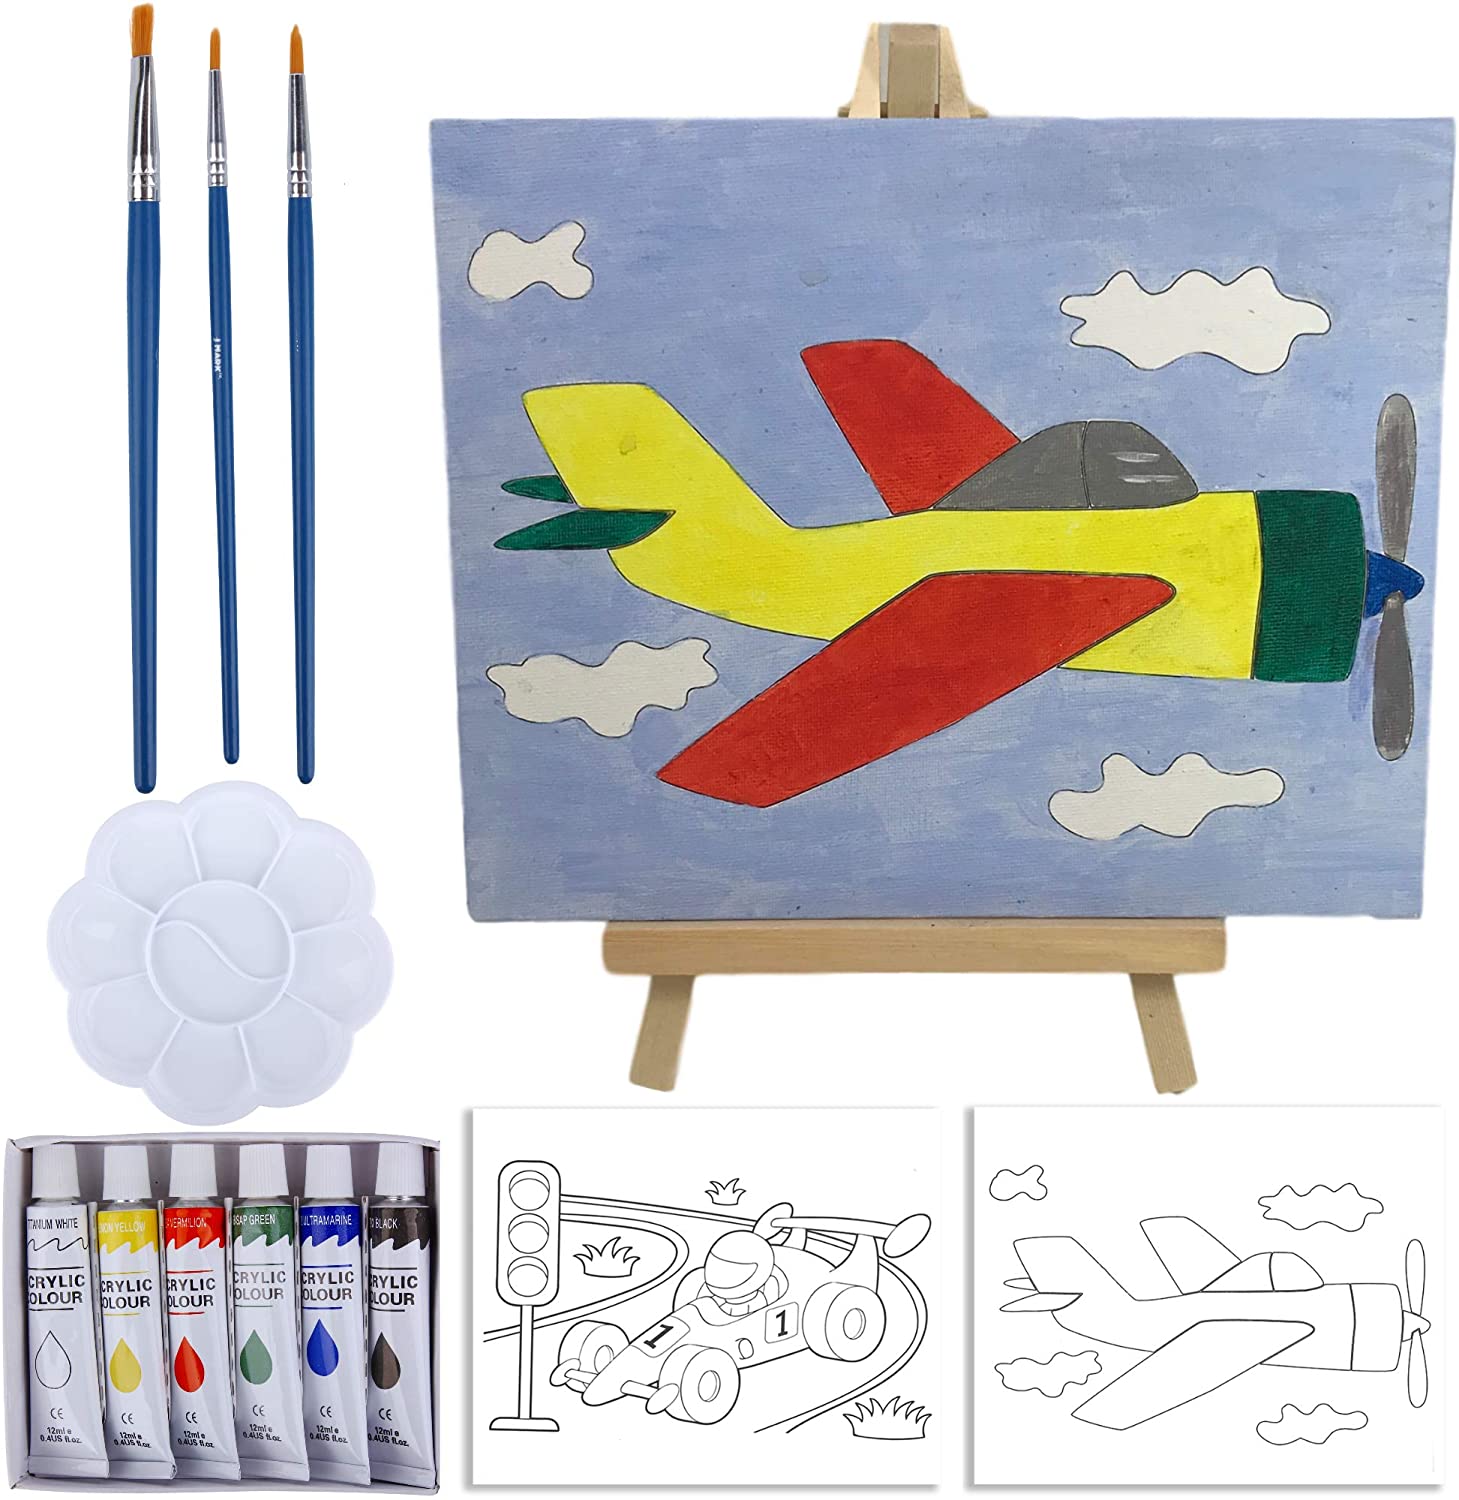 Juego de pintura para niños y caballete – Kit de pintura acrílica de 14  piezas, 6 pinturas lavables no tóxicas, 1 caballete de madera, 2 lienzos